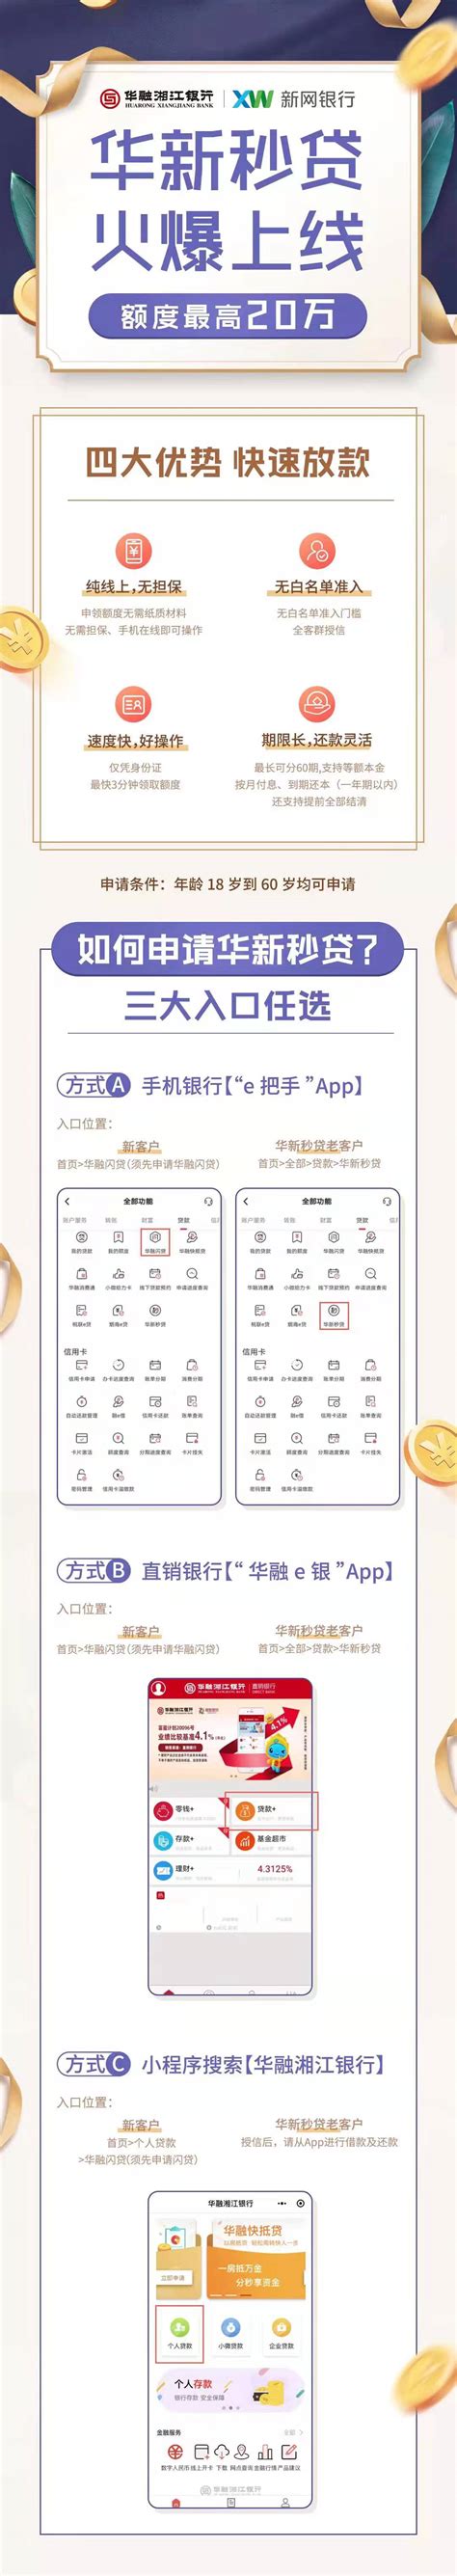 华融湘江银行联合新网银行推出全线上贷款产品 - 创物志 - 新湖南